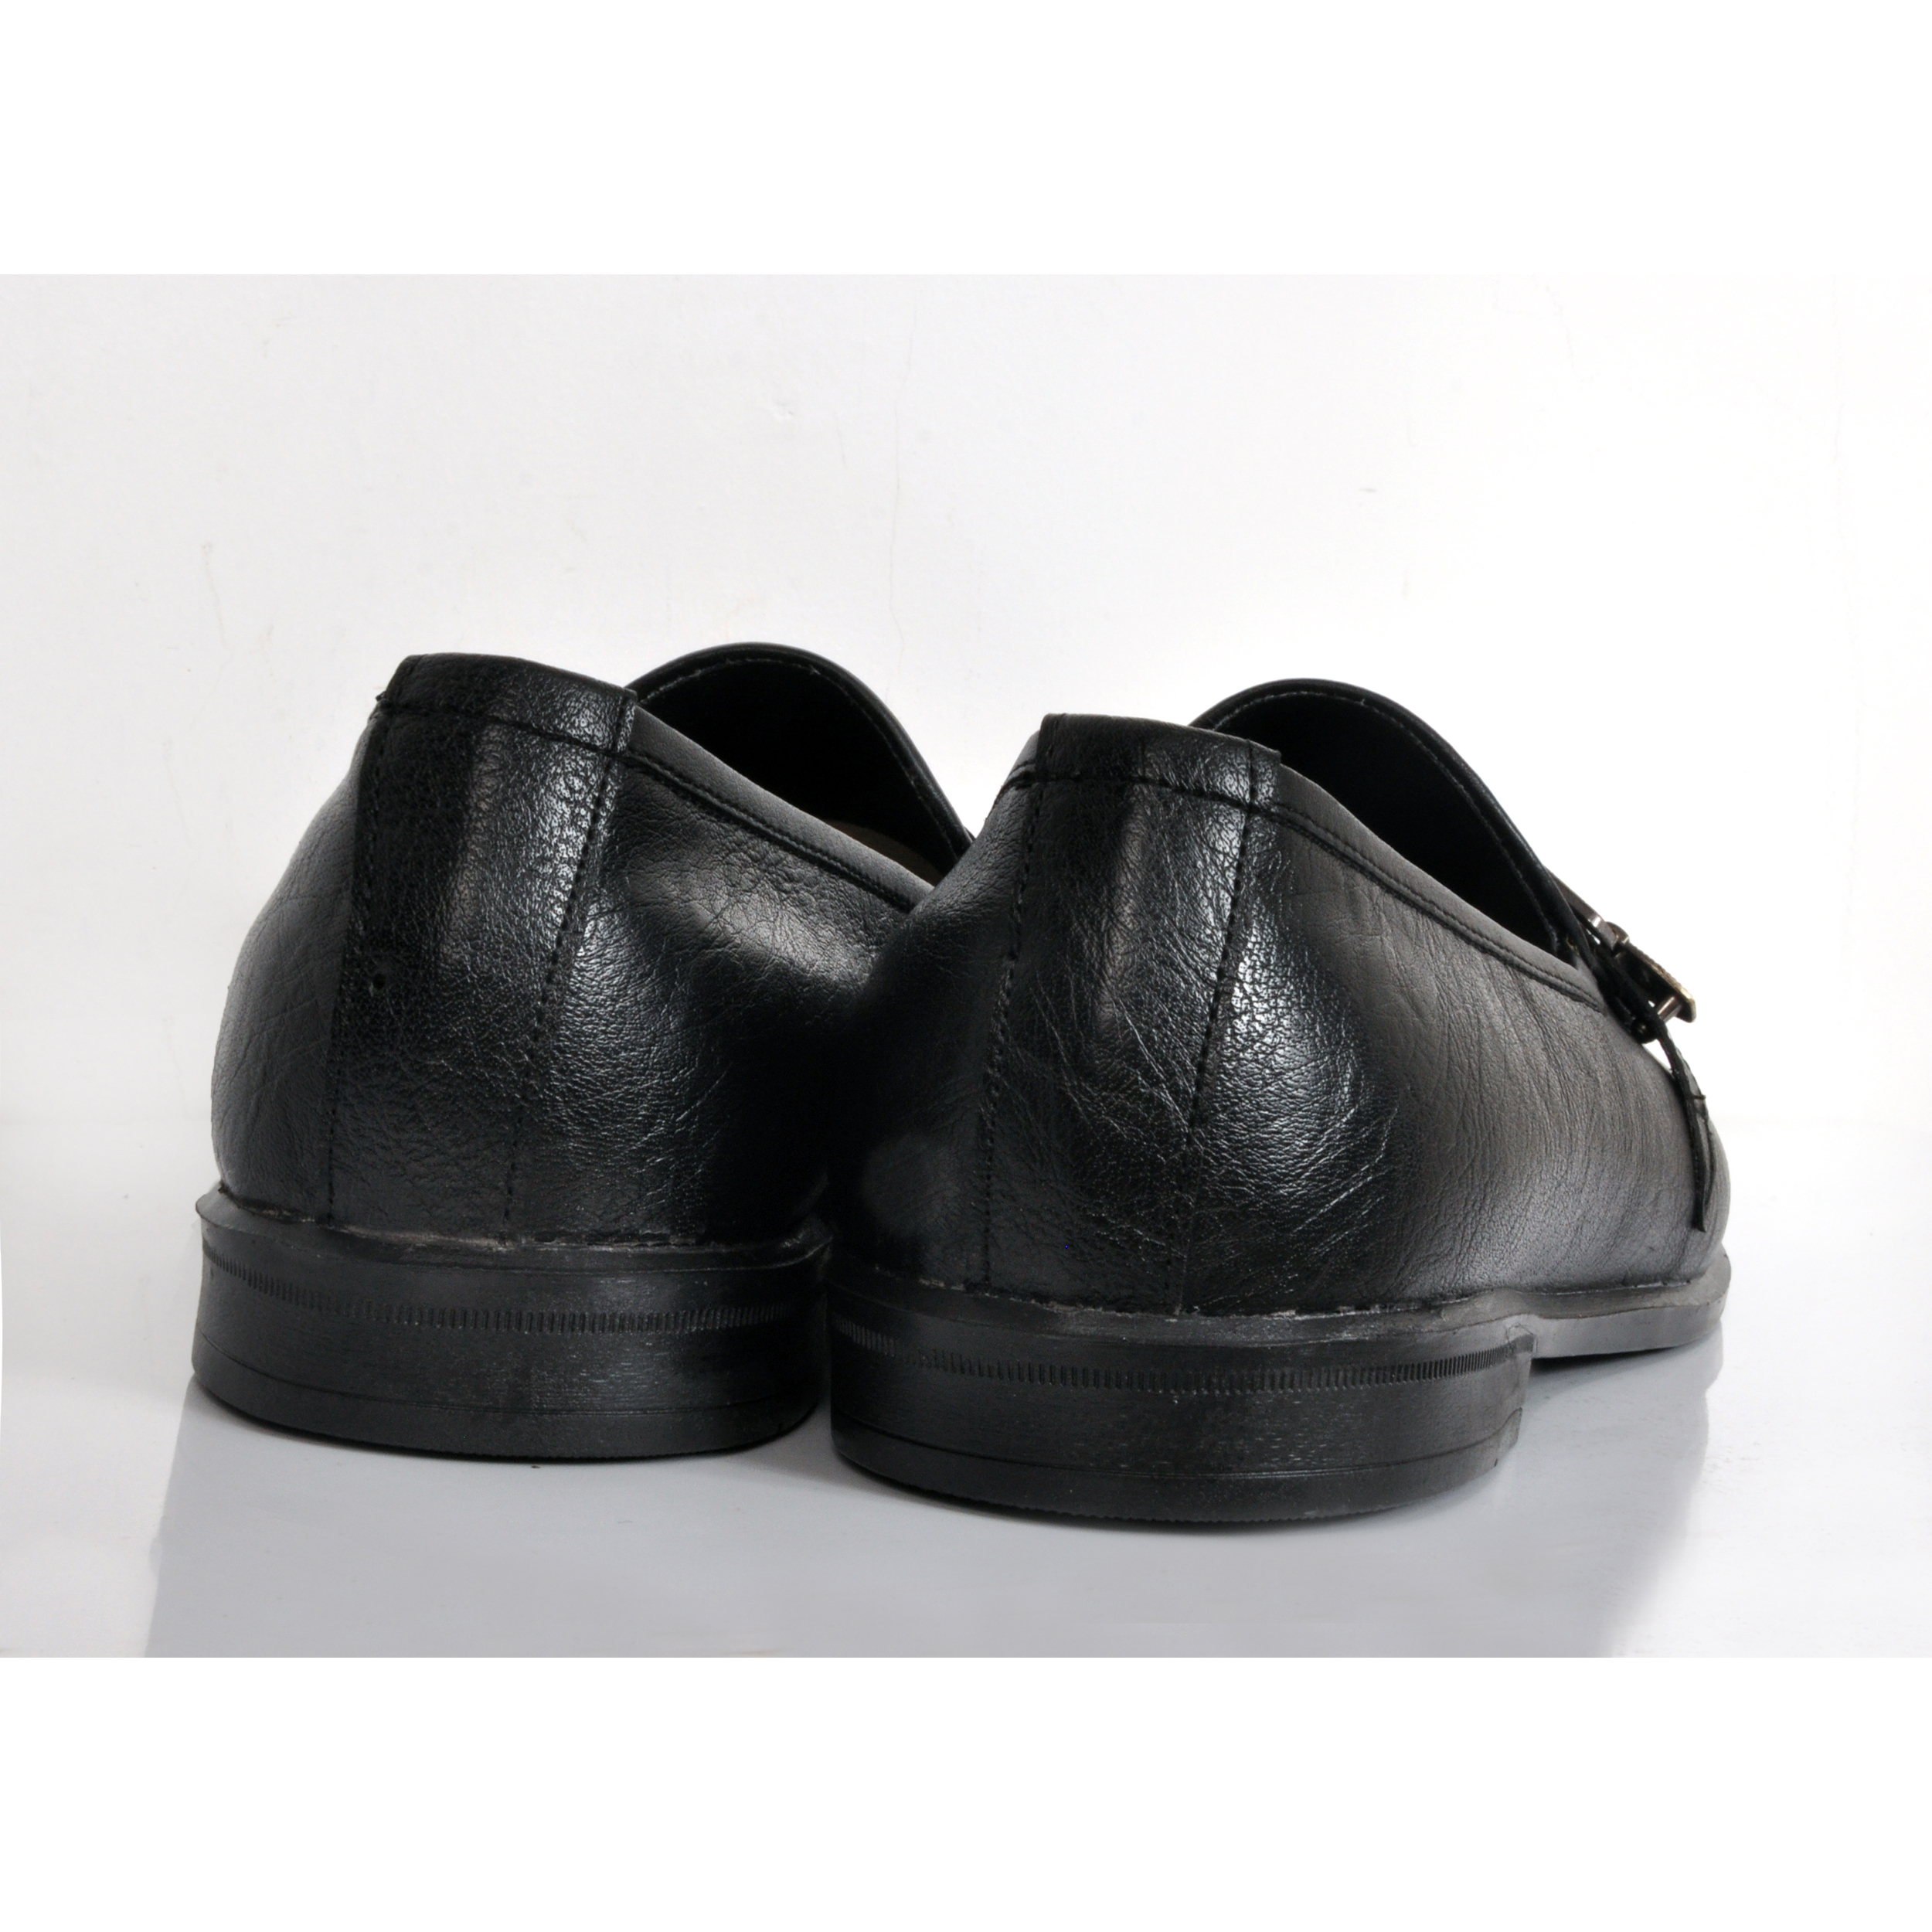 کفش مردانه کروماکی مدل KMS905